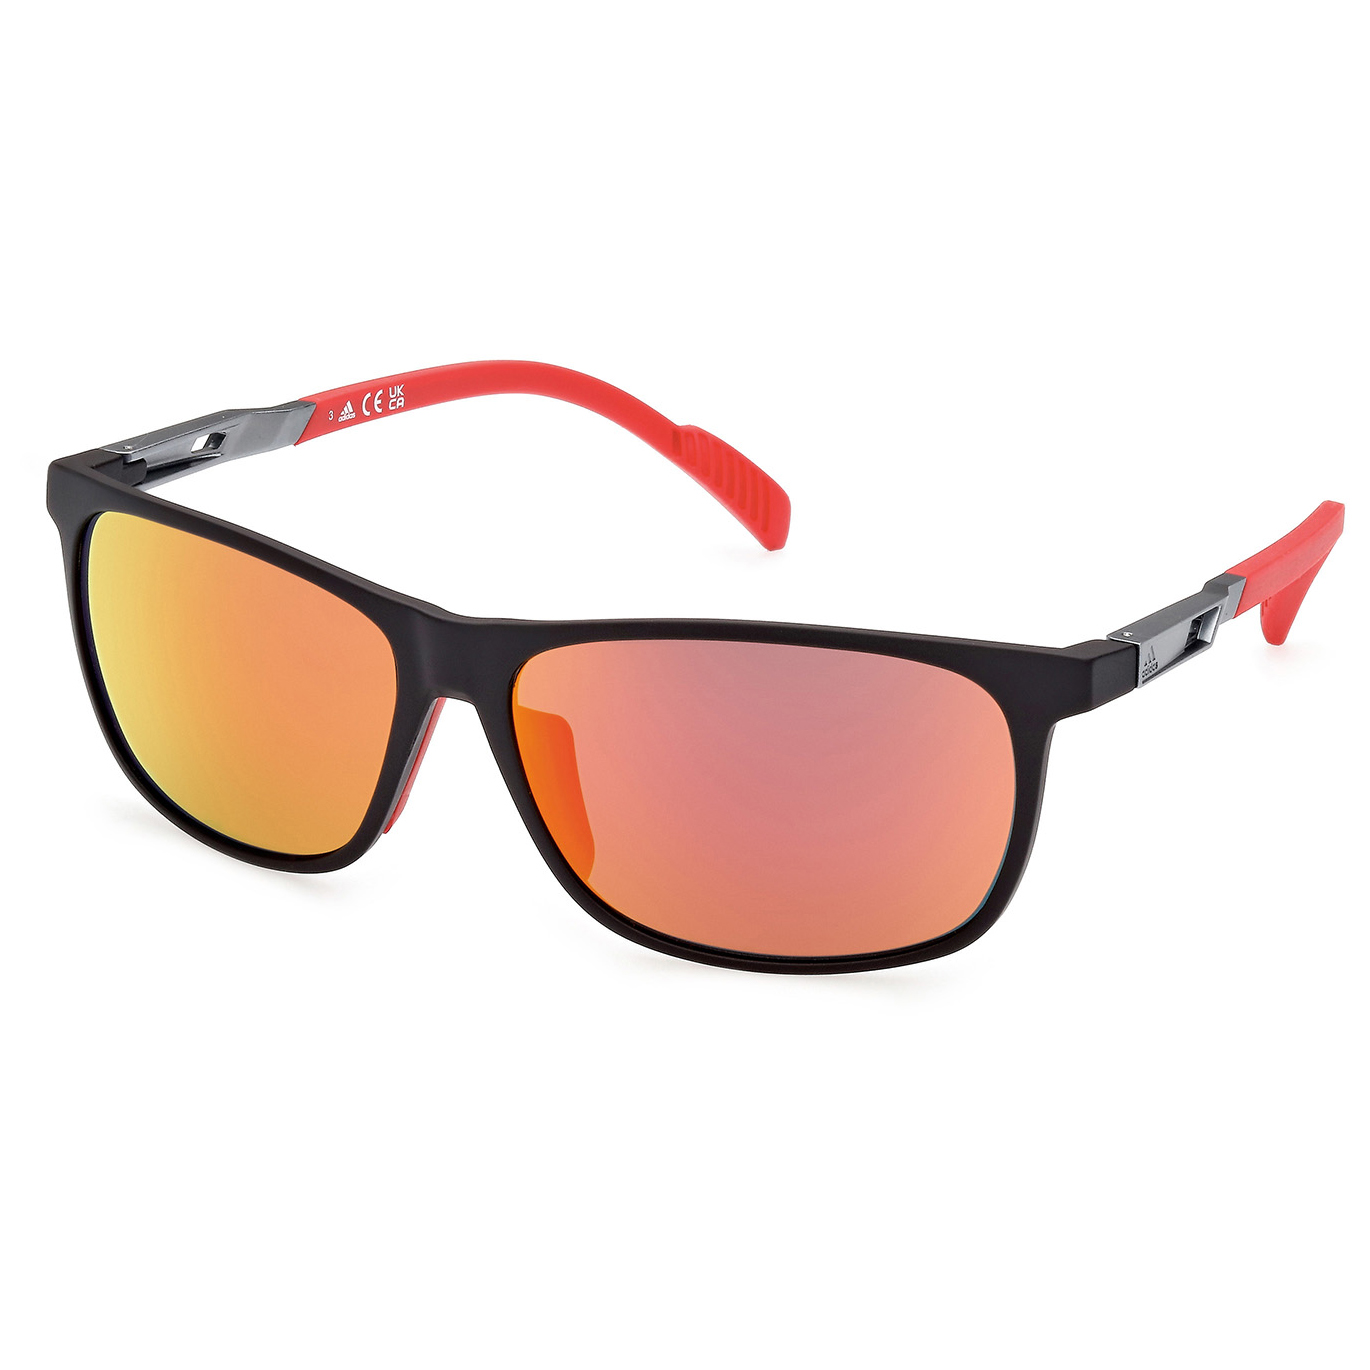 Солнцезащитные очки Adidas SP0061 Mirror Cat 3, матовый черный солнцезащитные очки adidas sp0083 mirror cat 3 цвет crystal